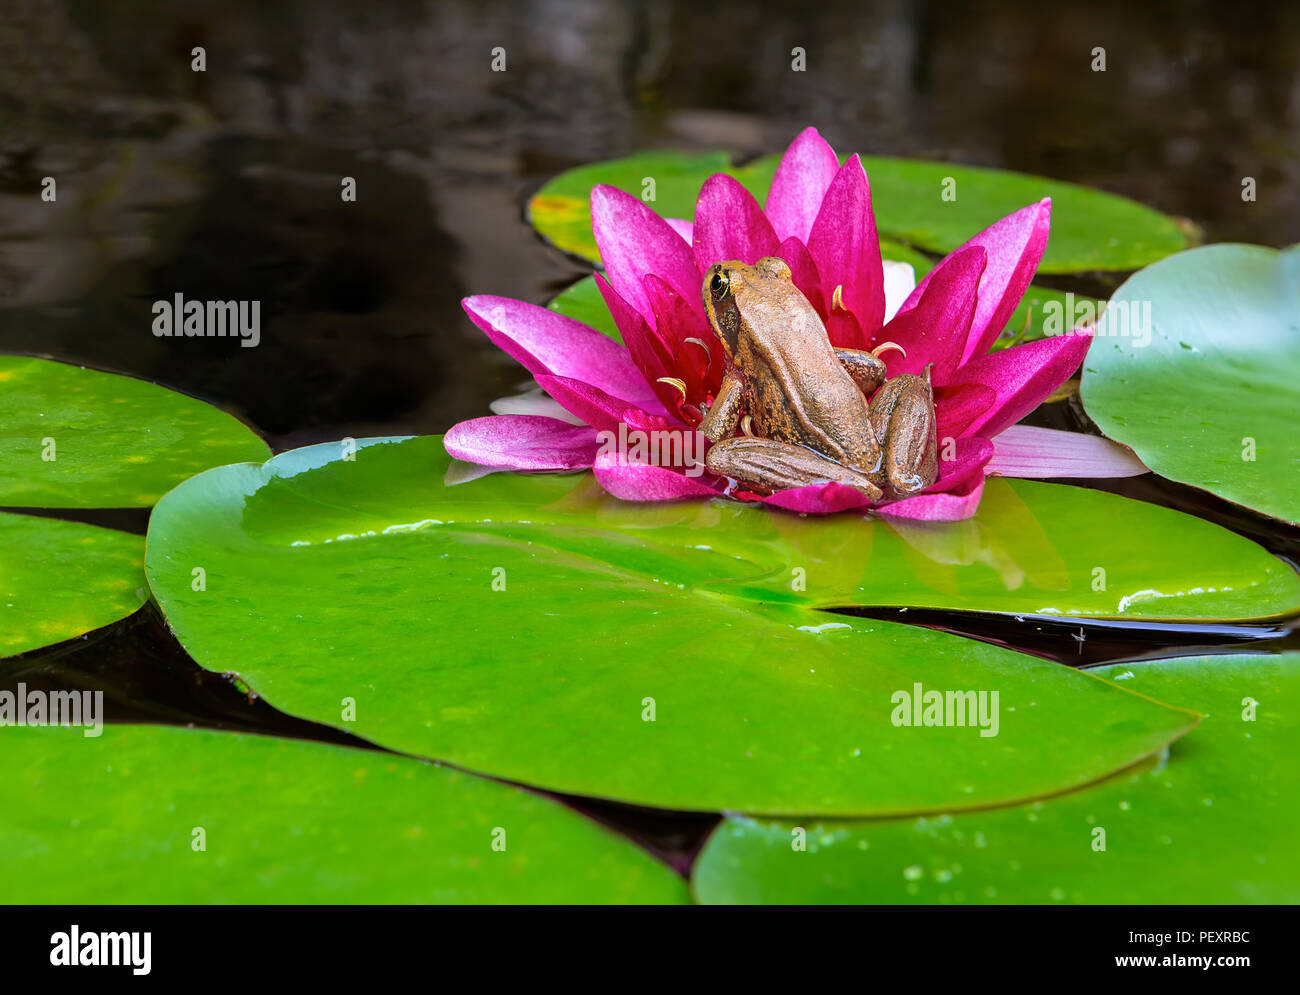 Coro del Pacífico Tree Frog sentado en rosa igarden Nenúfar estanque del patio Foto de stock